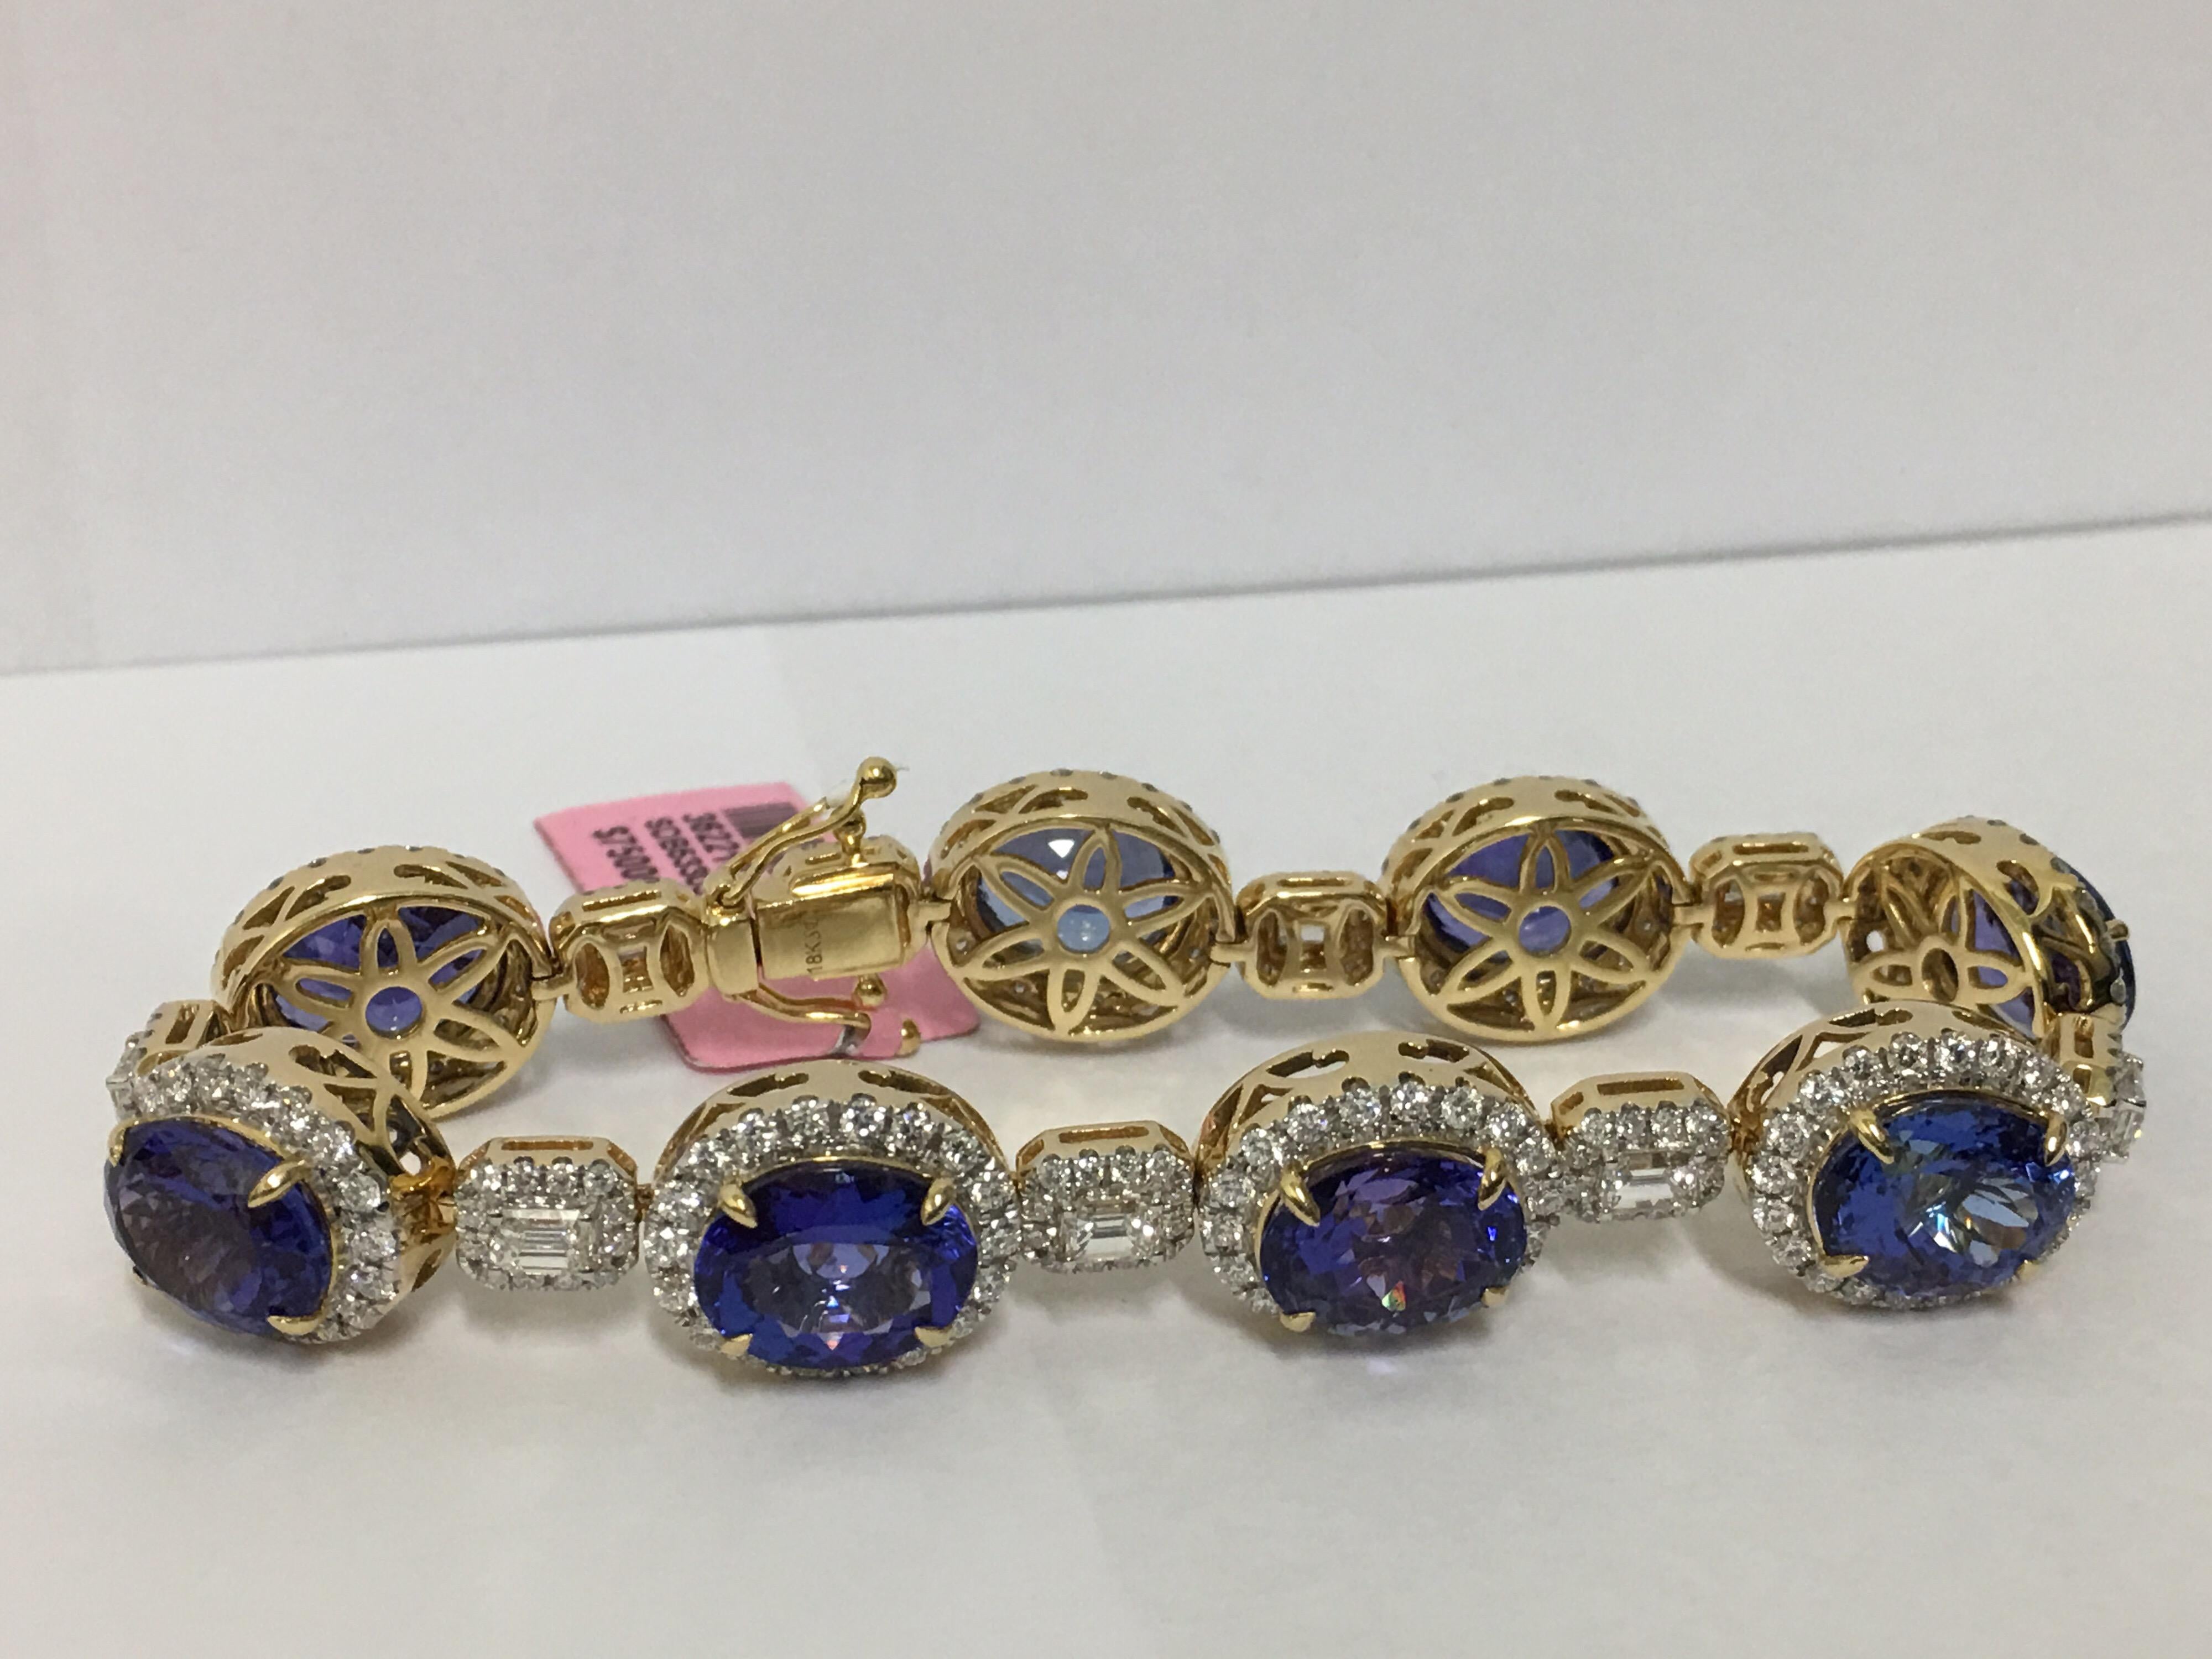 Alle abgestimmten AAA Royal Blue Ink Farbe Tanzanite ist handgefertigt ein von einer Art Armband
Das Armband ist aus folgenden Materialien gefertigt  31.92 Karat Tansanit und 5,73 Rund- und Smaragdschliff dazwischen.
Das Armband ist aus 18 Karat